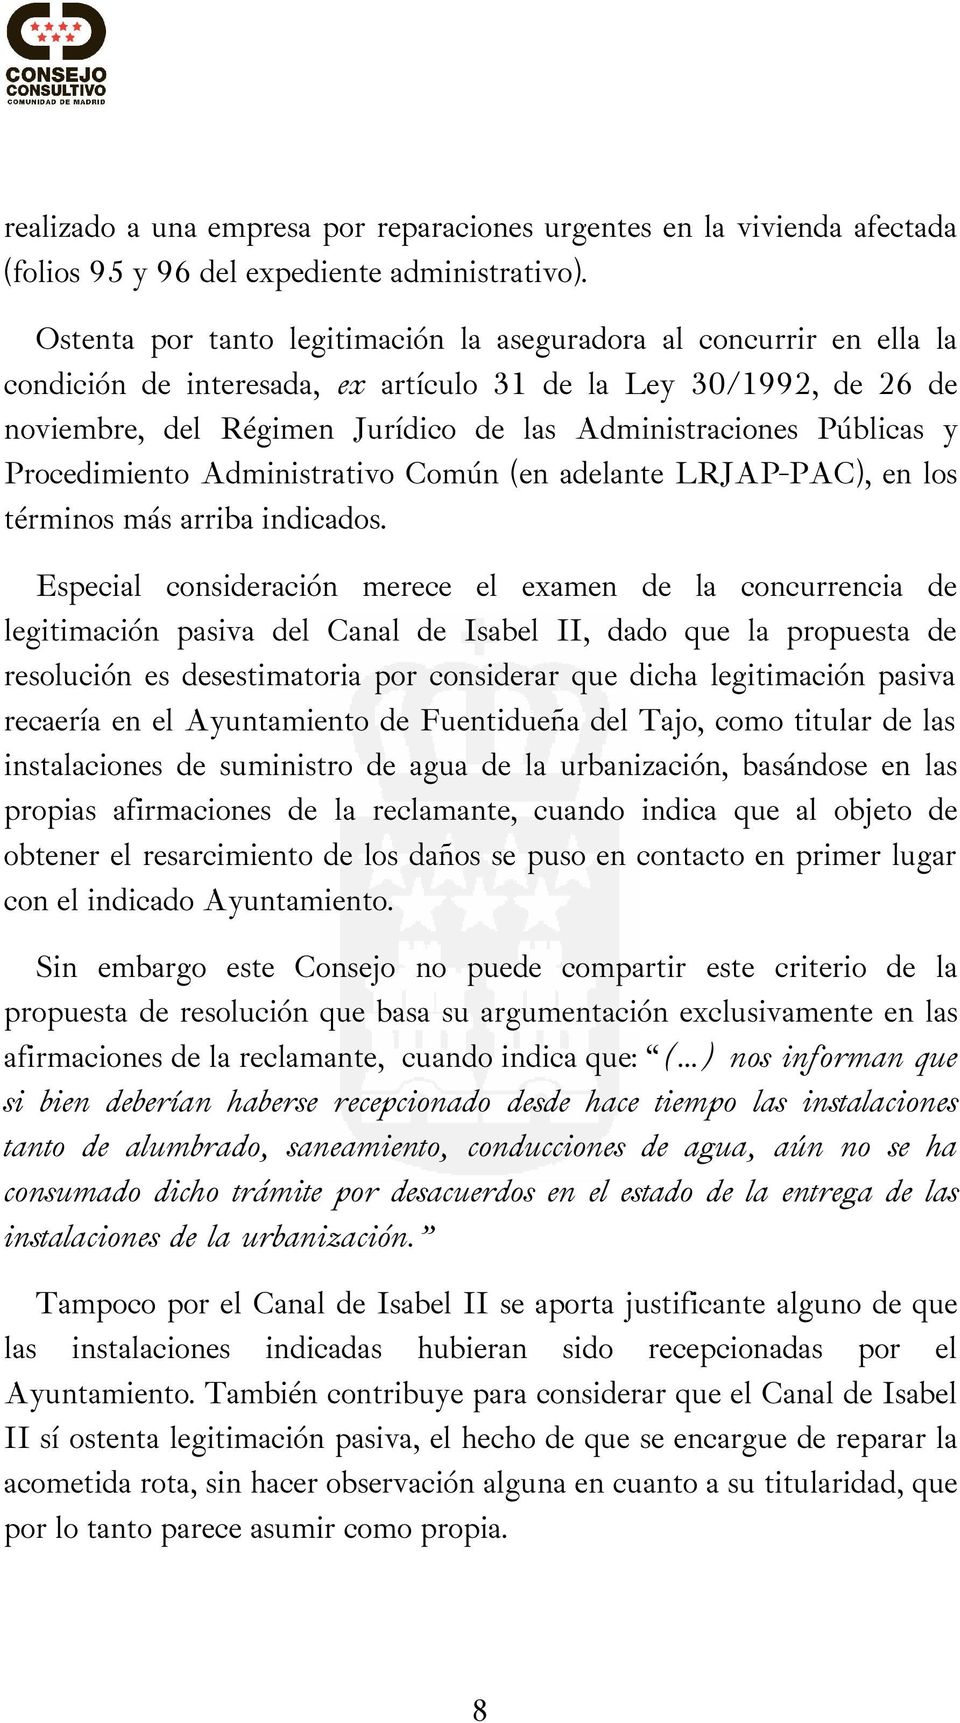 Públicas y Procedimiento Administrativo Común (en adelante LRJAP-PAC), en los términos más arriba indicados.